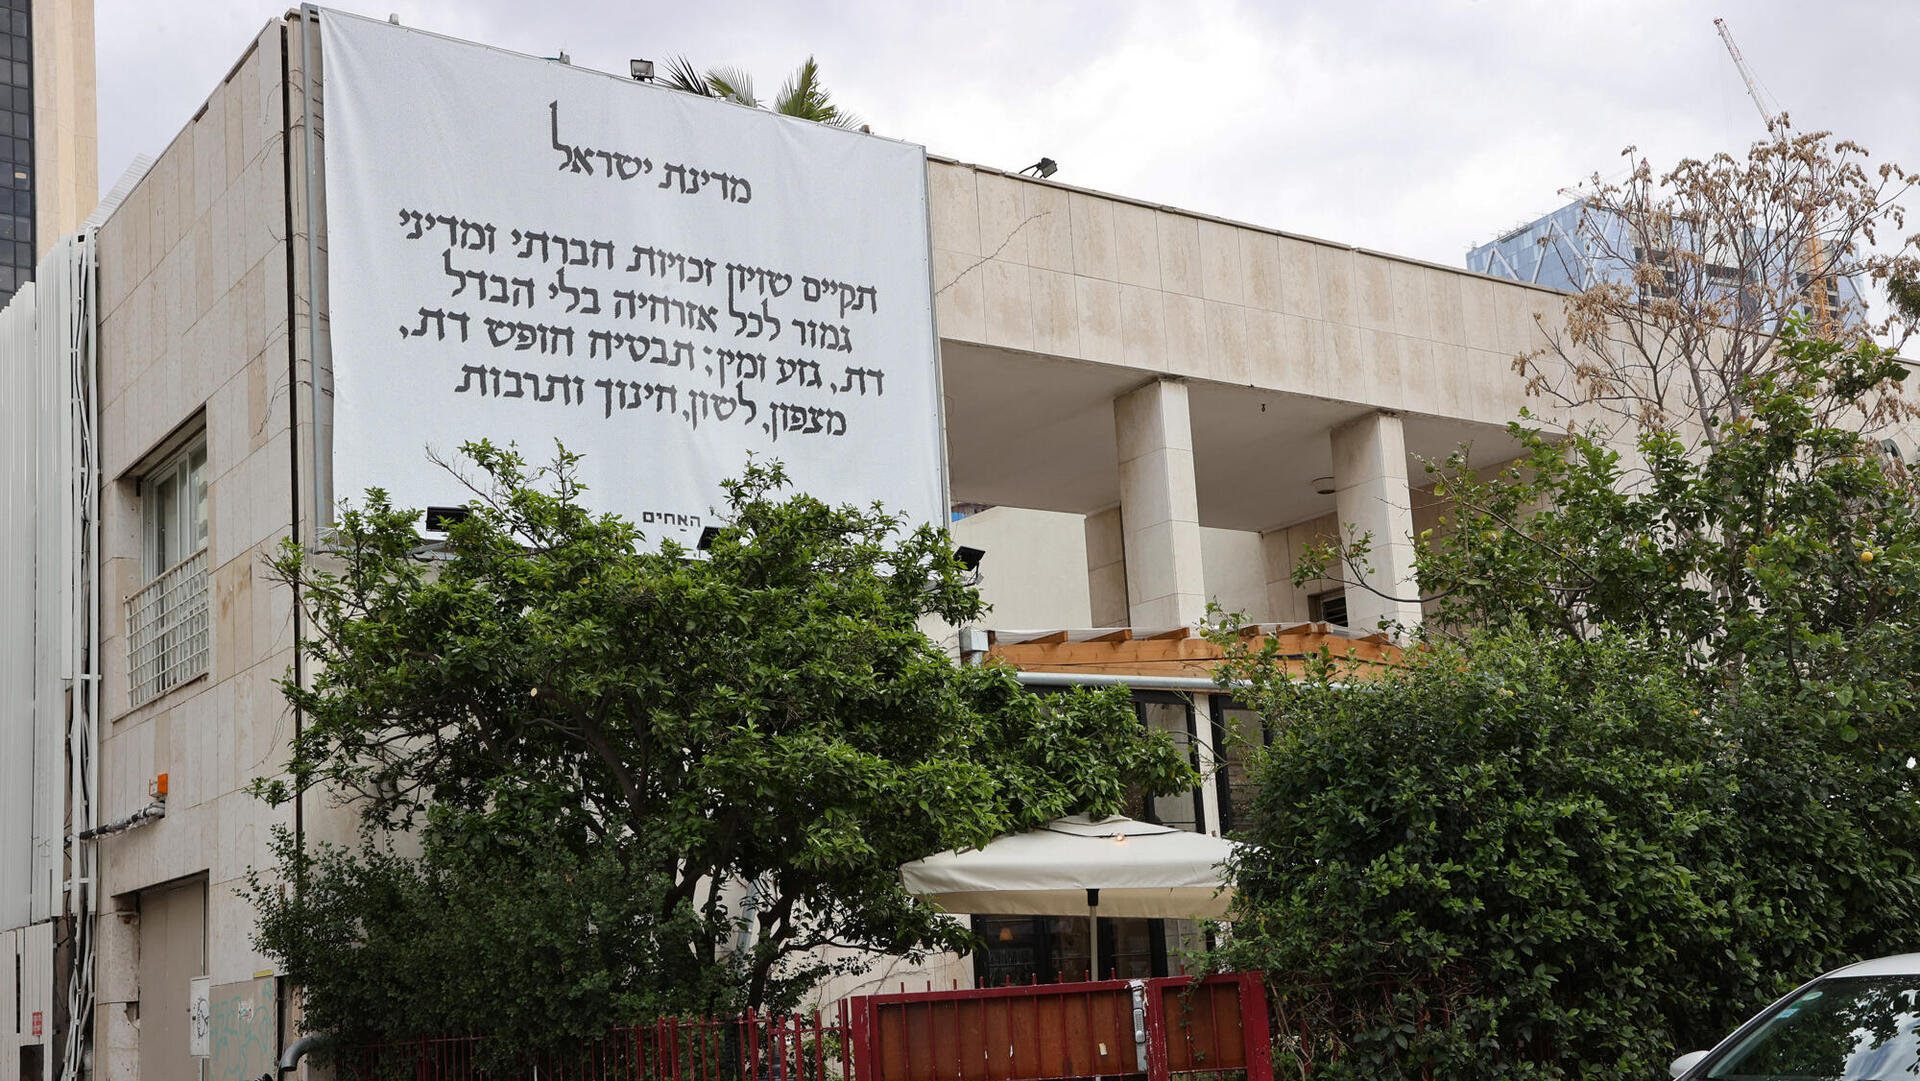 פנאי מסעדת האחים - תלו פסקה ממגילת העצמאות על הקיר החיצוני שלהם תל אביב